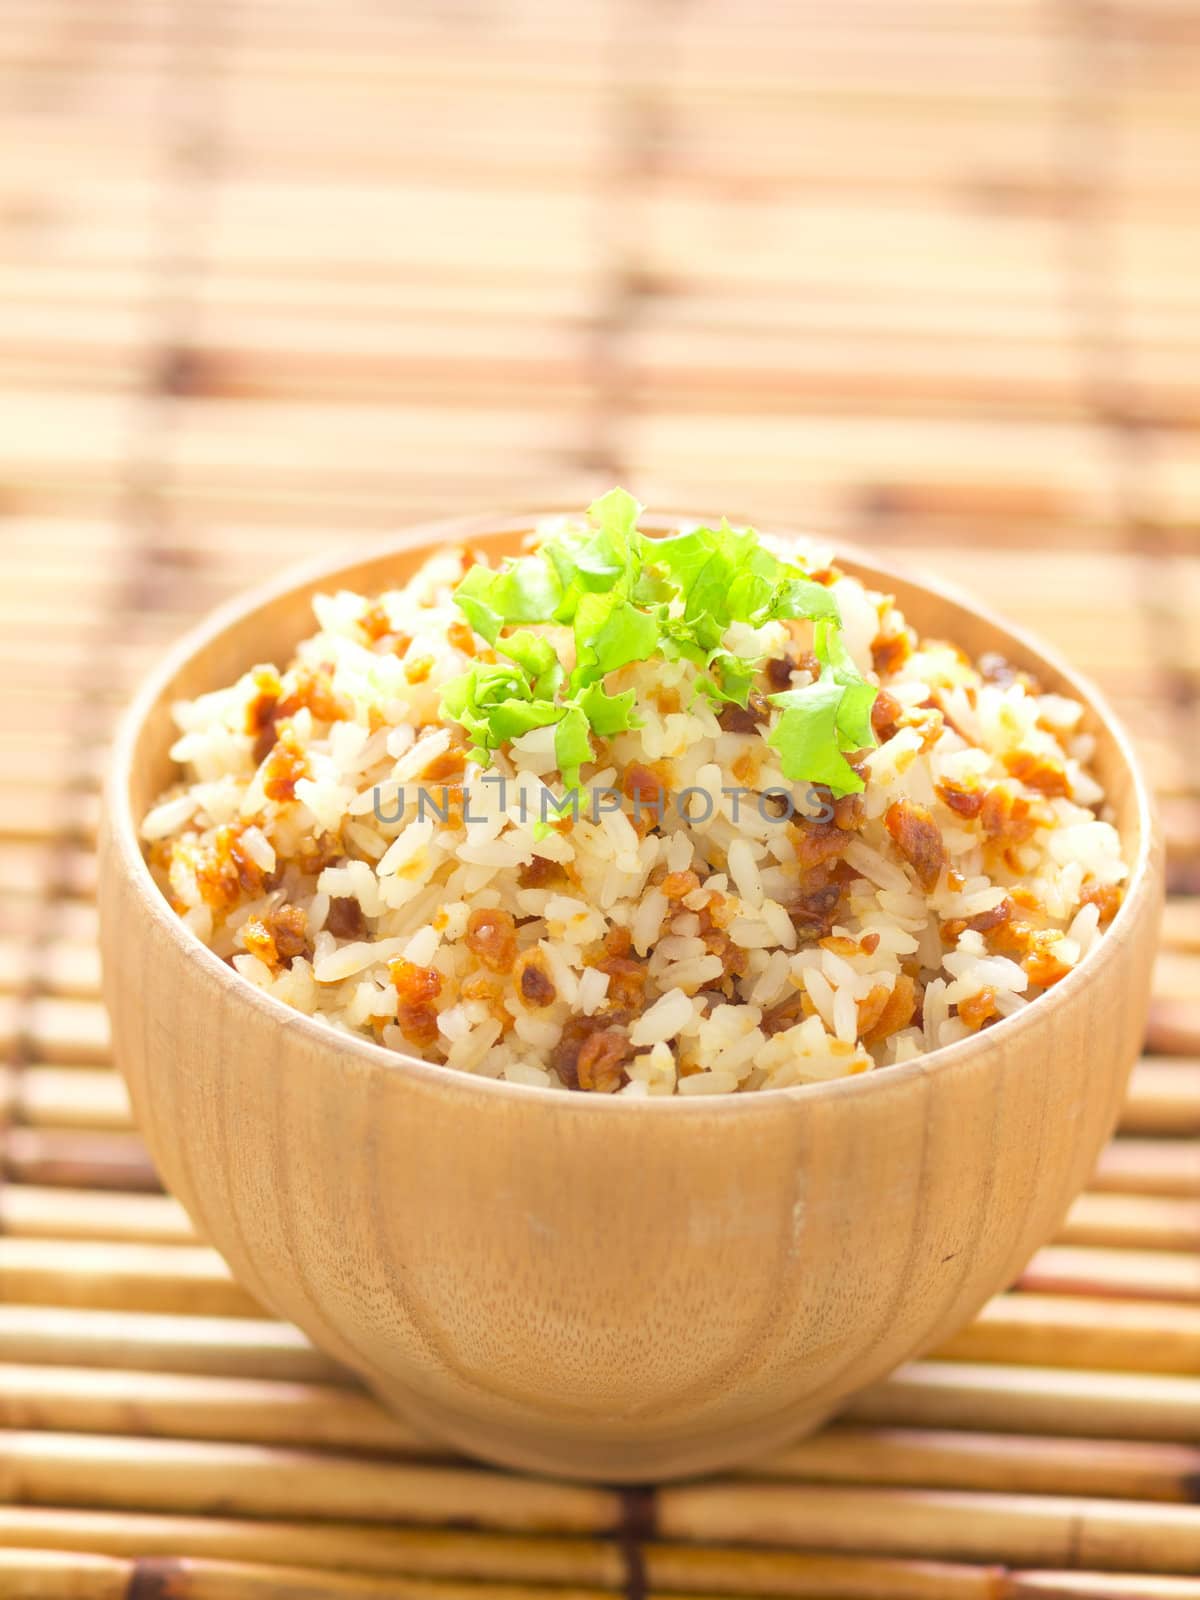 garlic fried rice by zkruger